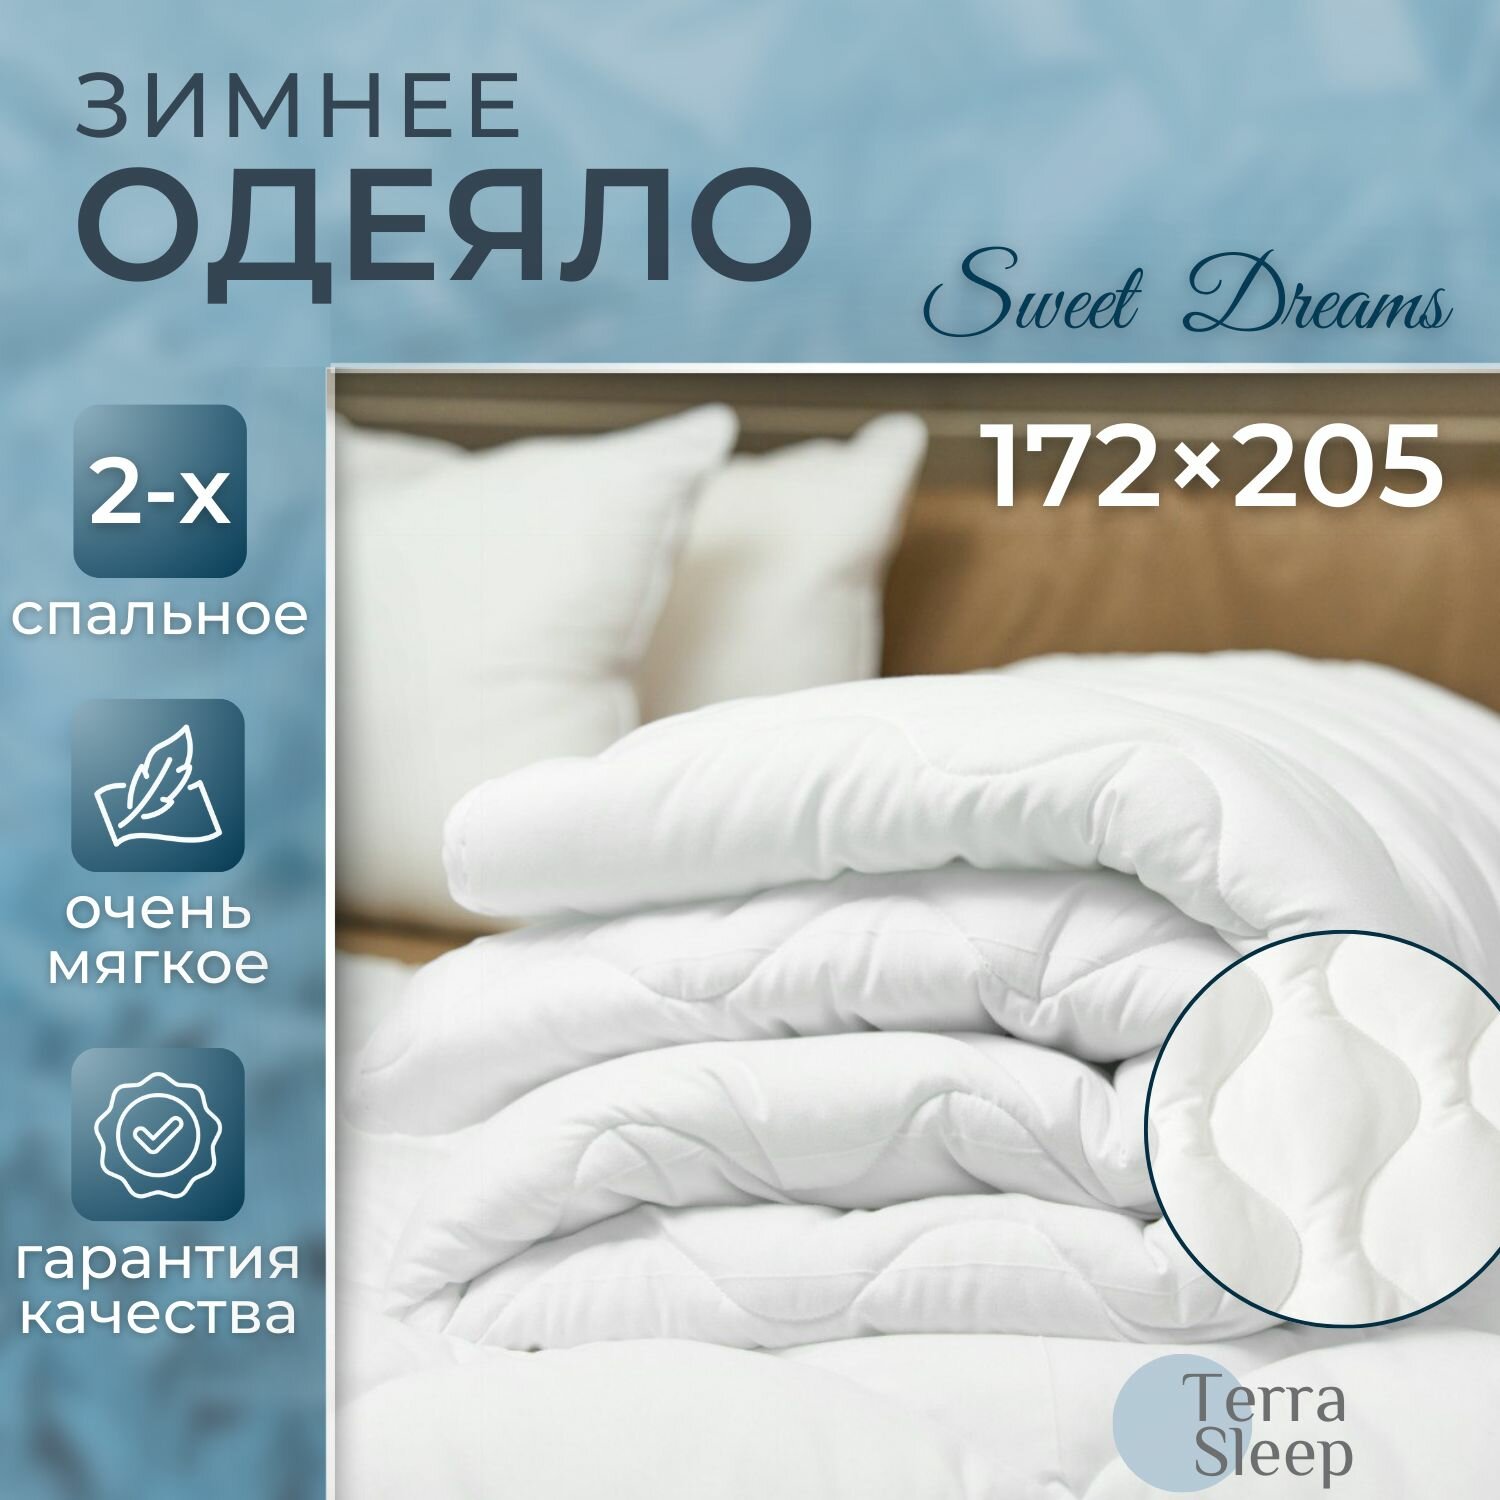 Одеяло Sweet Dreams, 2 спальное 172х205 см, всесезонное, очень теплое, гипоаллергенный наполнитель Ютфайбер, декоративная стежка малая волна, 300 г/м2